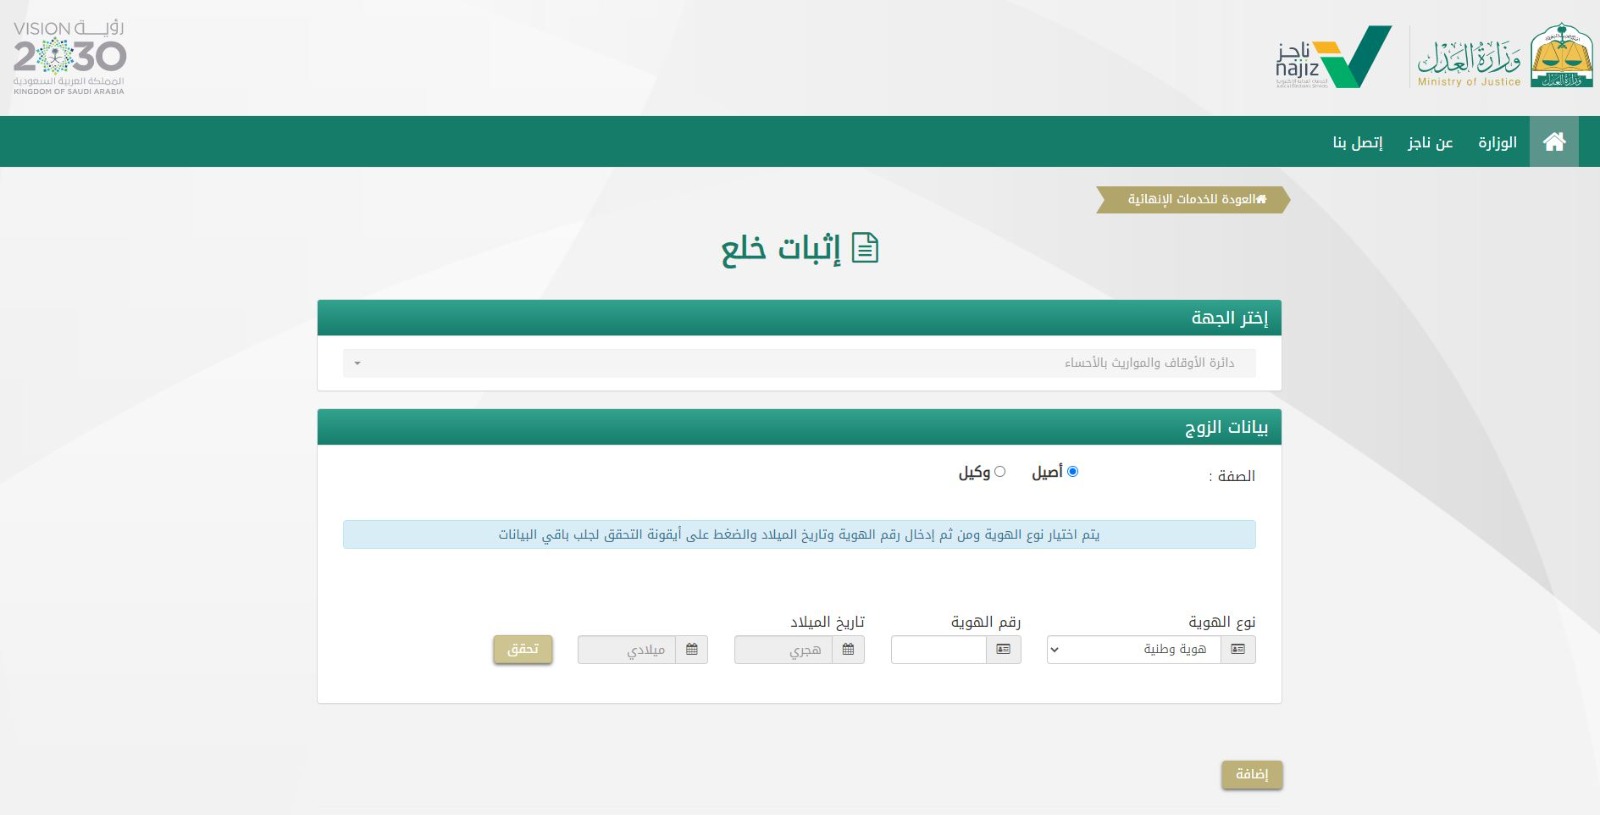 صورة من موقع وزارة العدل السعودية لخدمة "إثبات خلع".